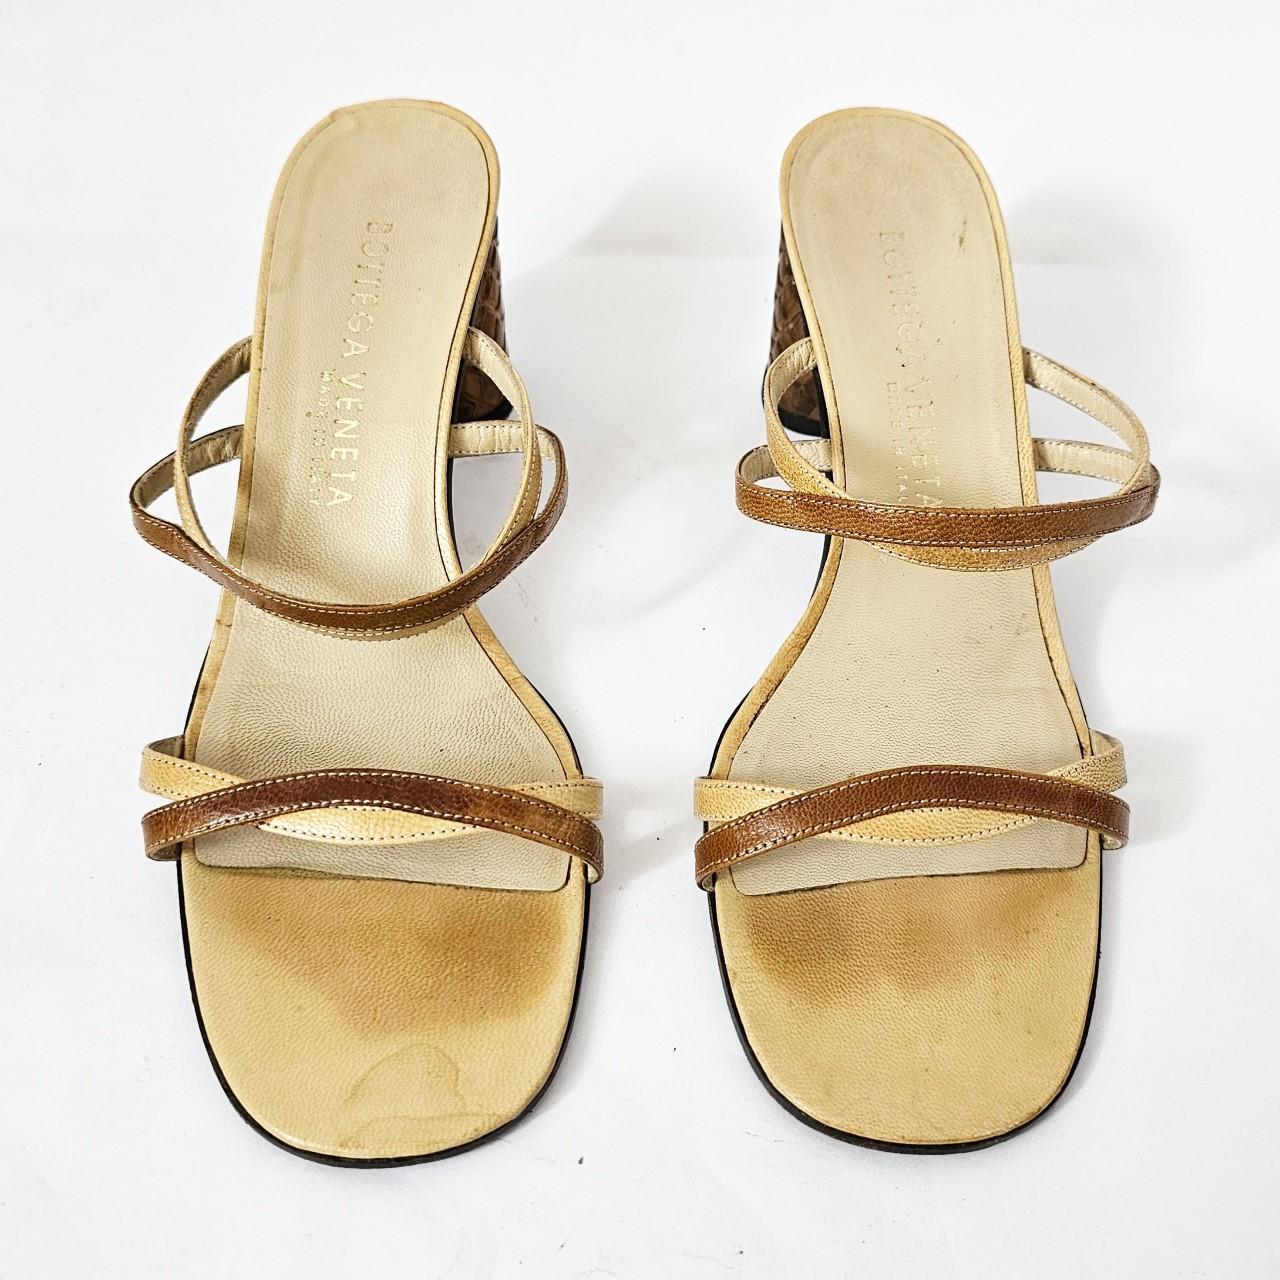 Bottega Veneta Women's Tan and Yellow Sandals - 3